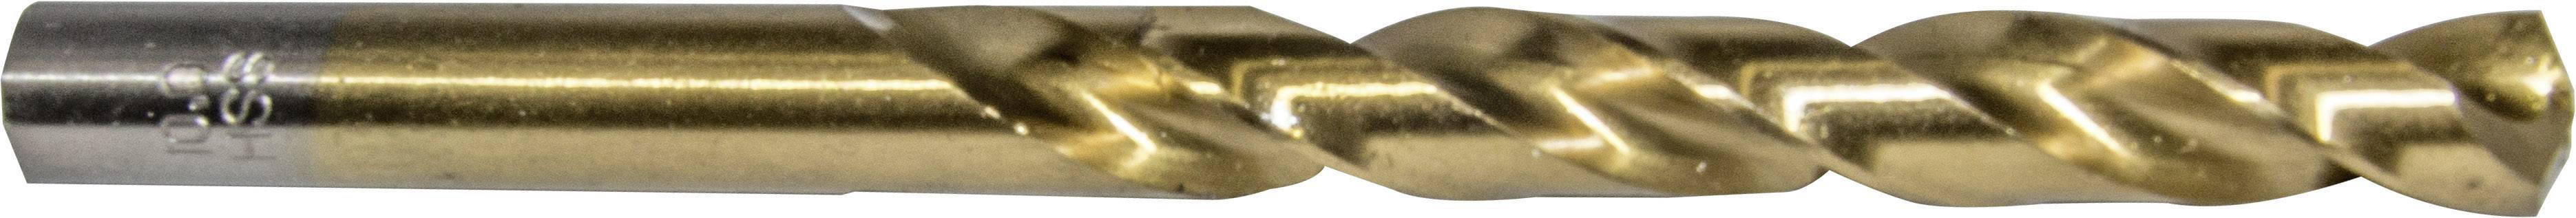 HELLER 29260 3 Metall-Spiralbohrer 1 Stück 4 mm Gesamtlänge 75 mm 1 St.